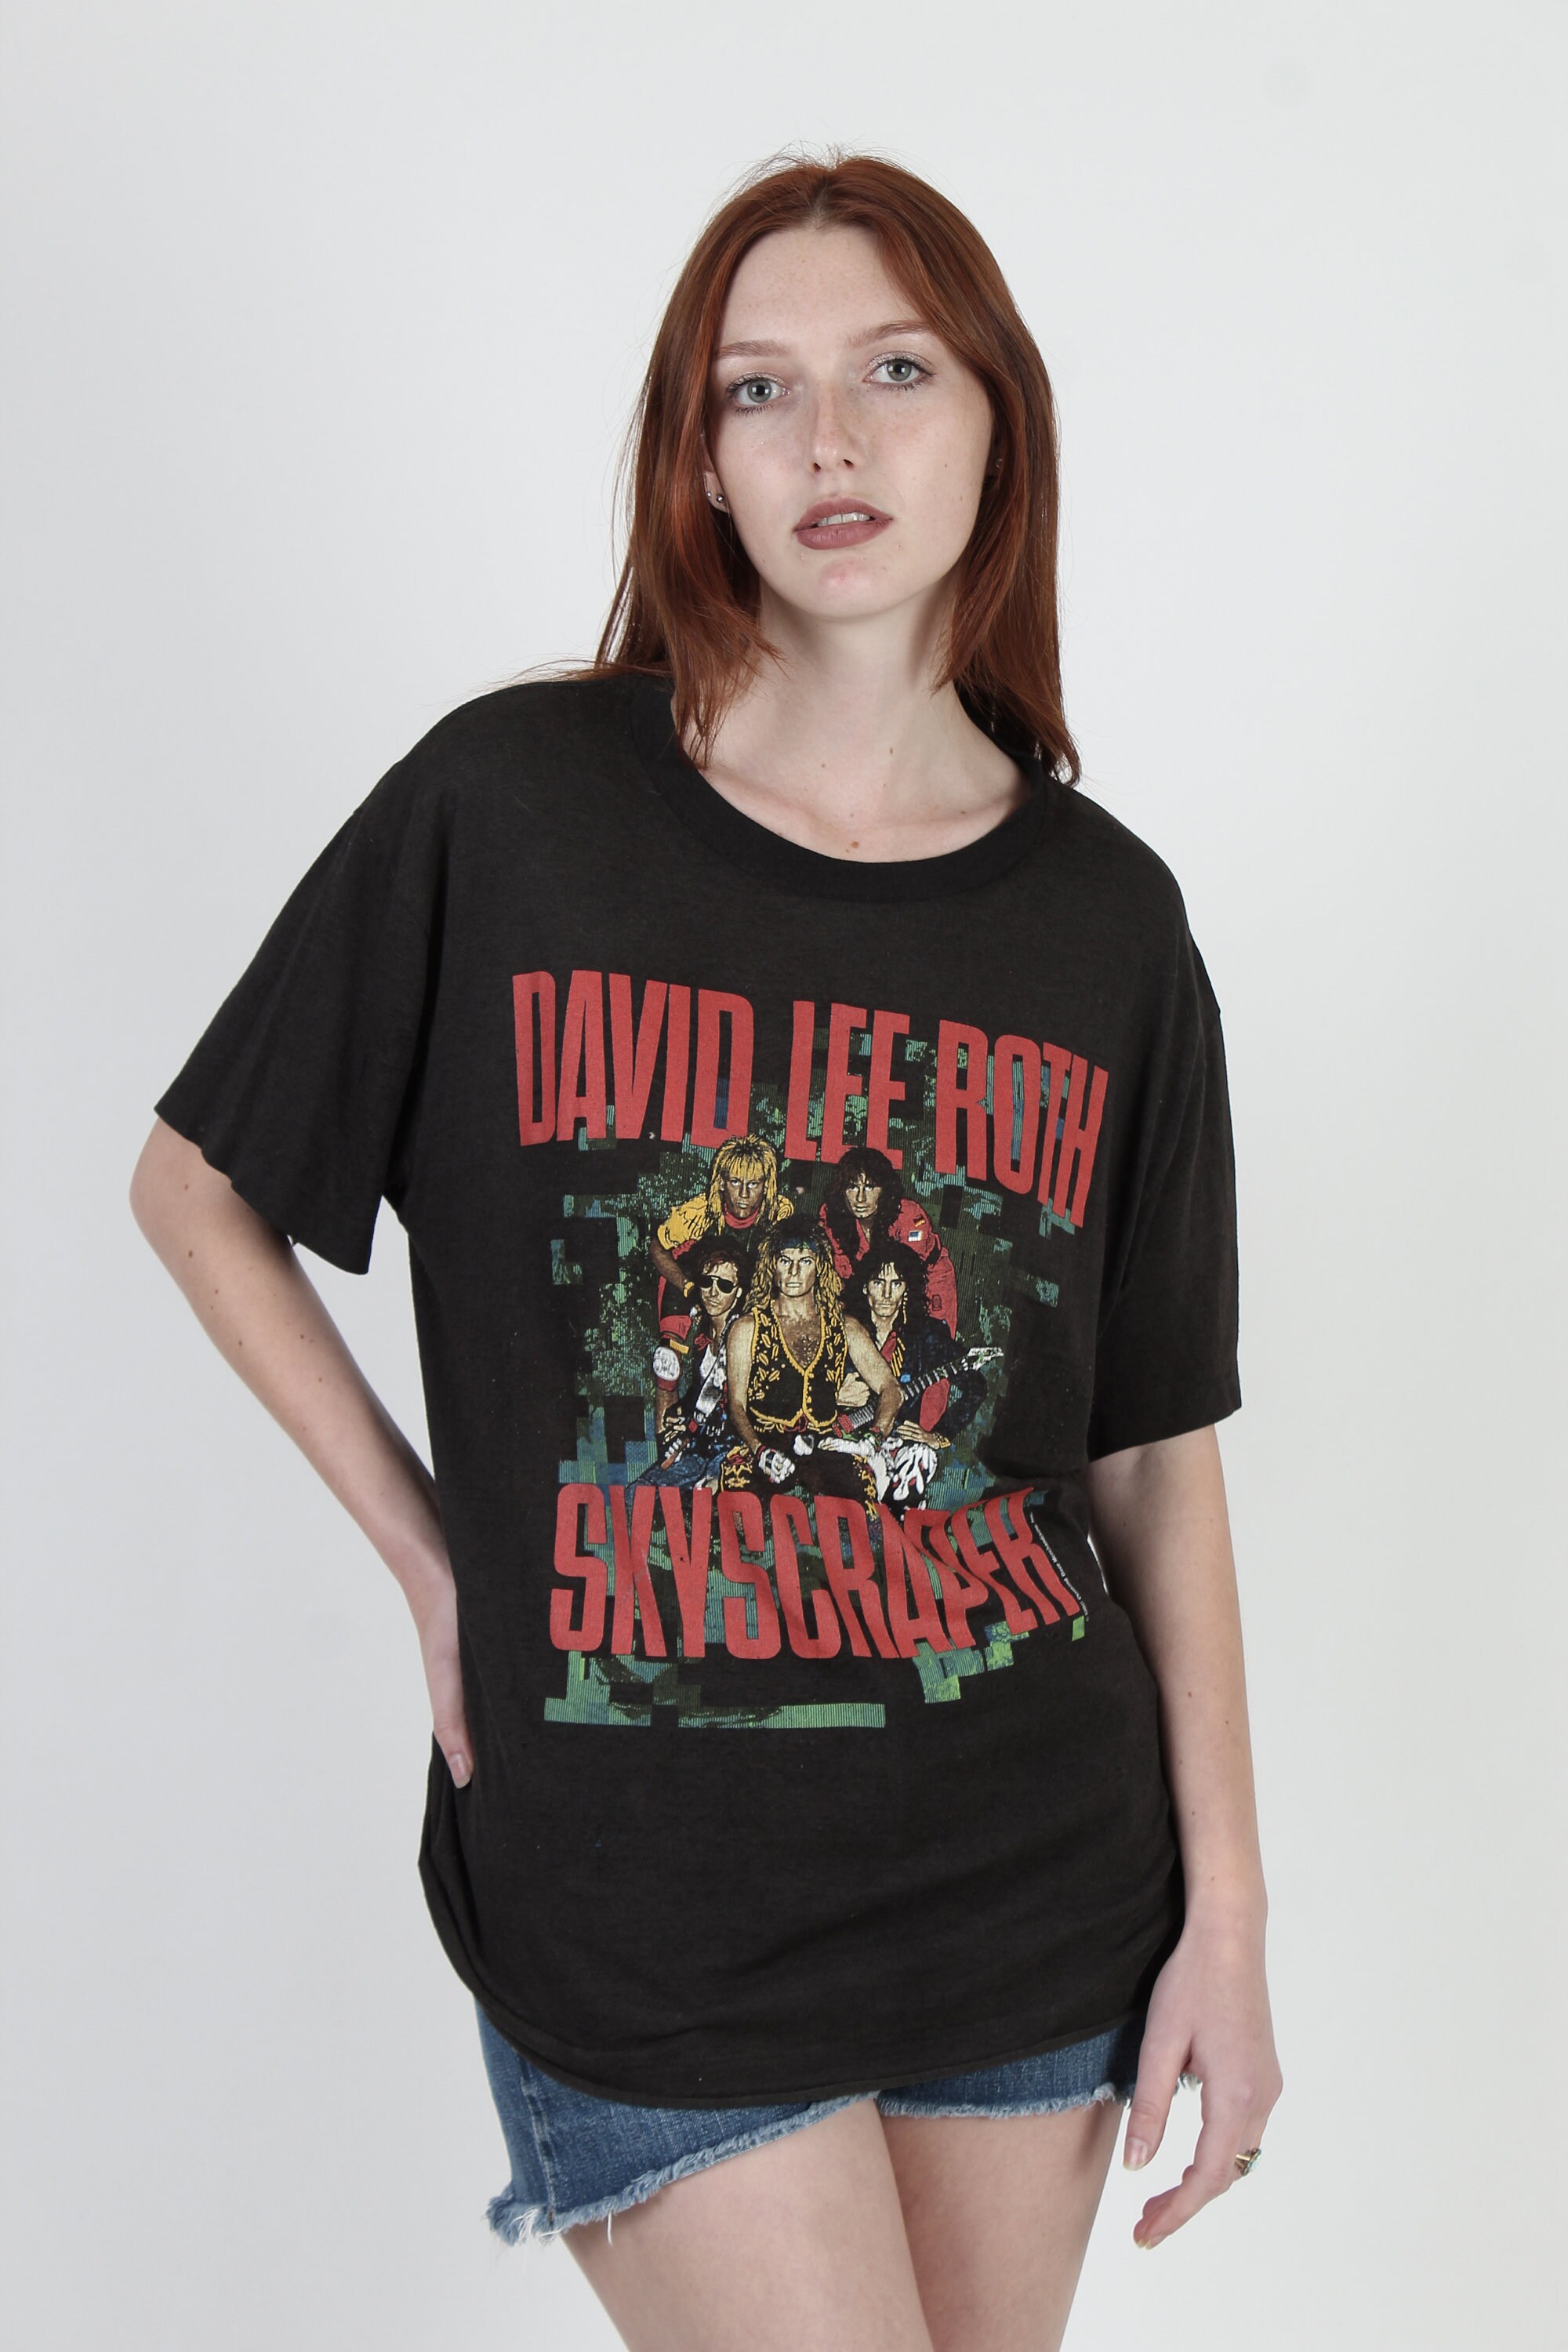 Vintage 1988 David Lee Roth Skyscraper Tour Shirt Taglia M Spedizione gratuita Abbigliamento Abbigliamento genere neutro per adulti Top e magliette T-shirt T-shirt con disegni 